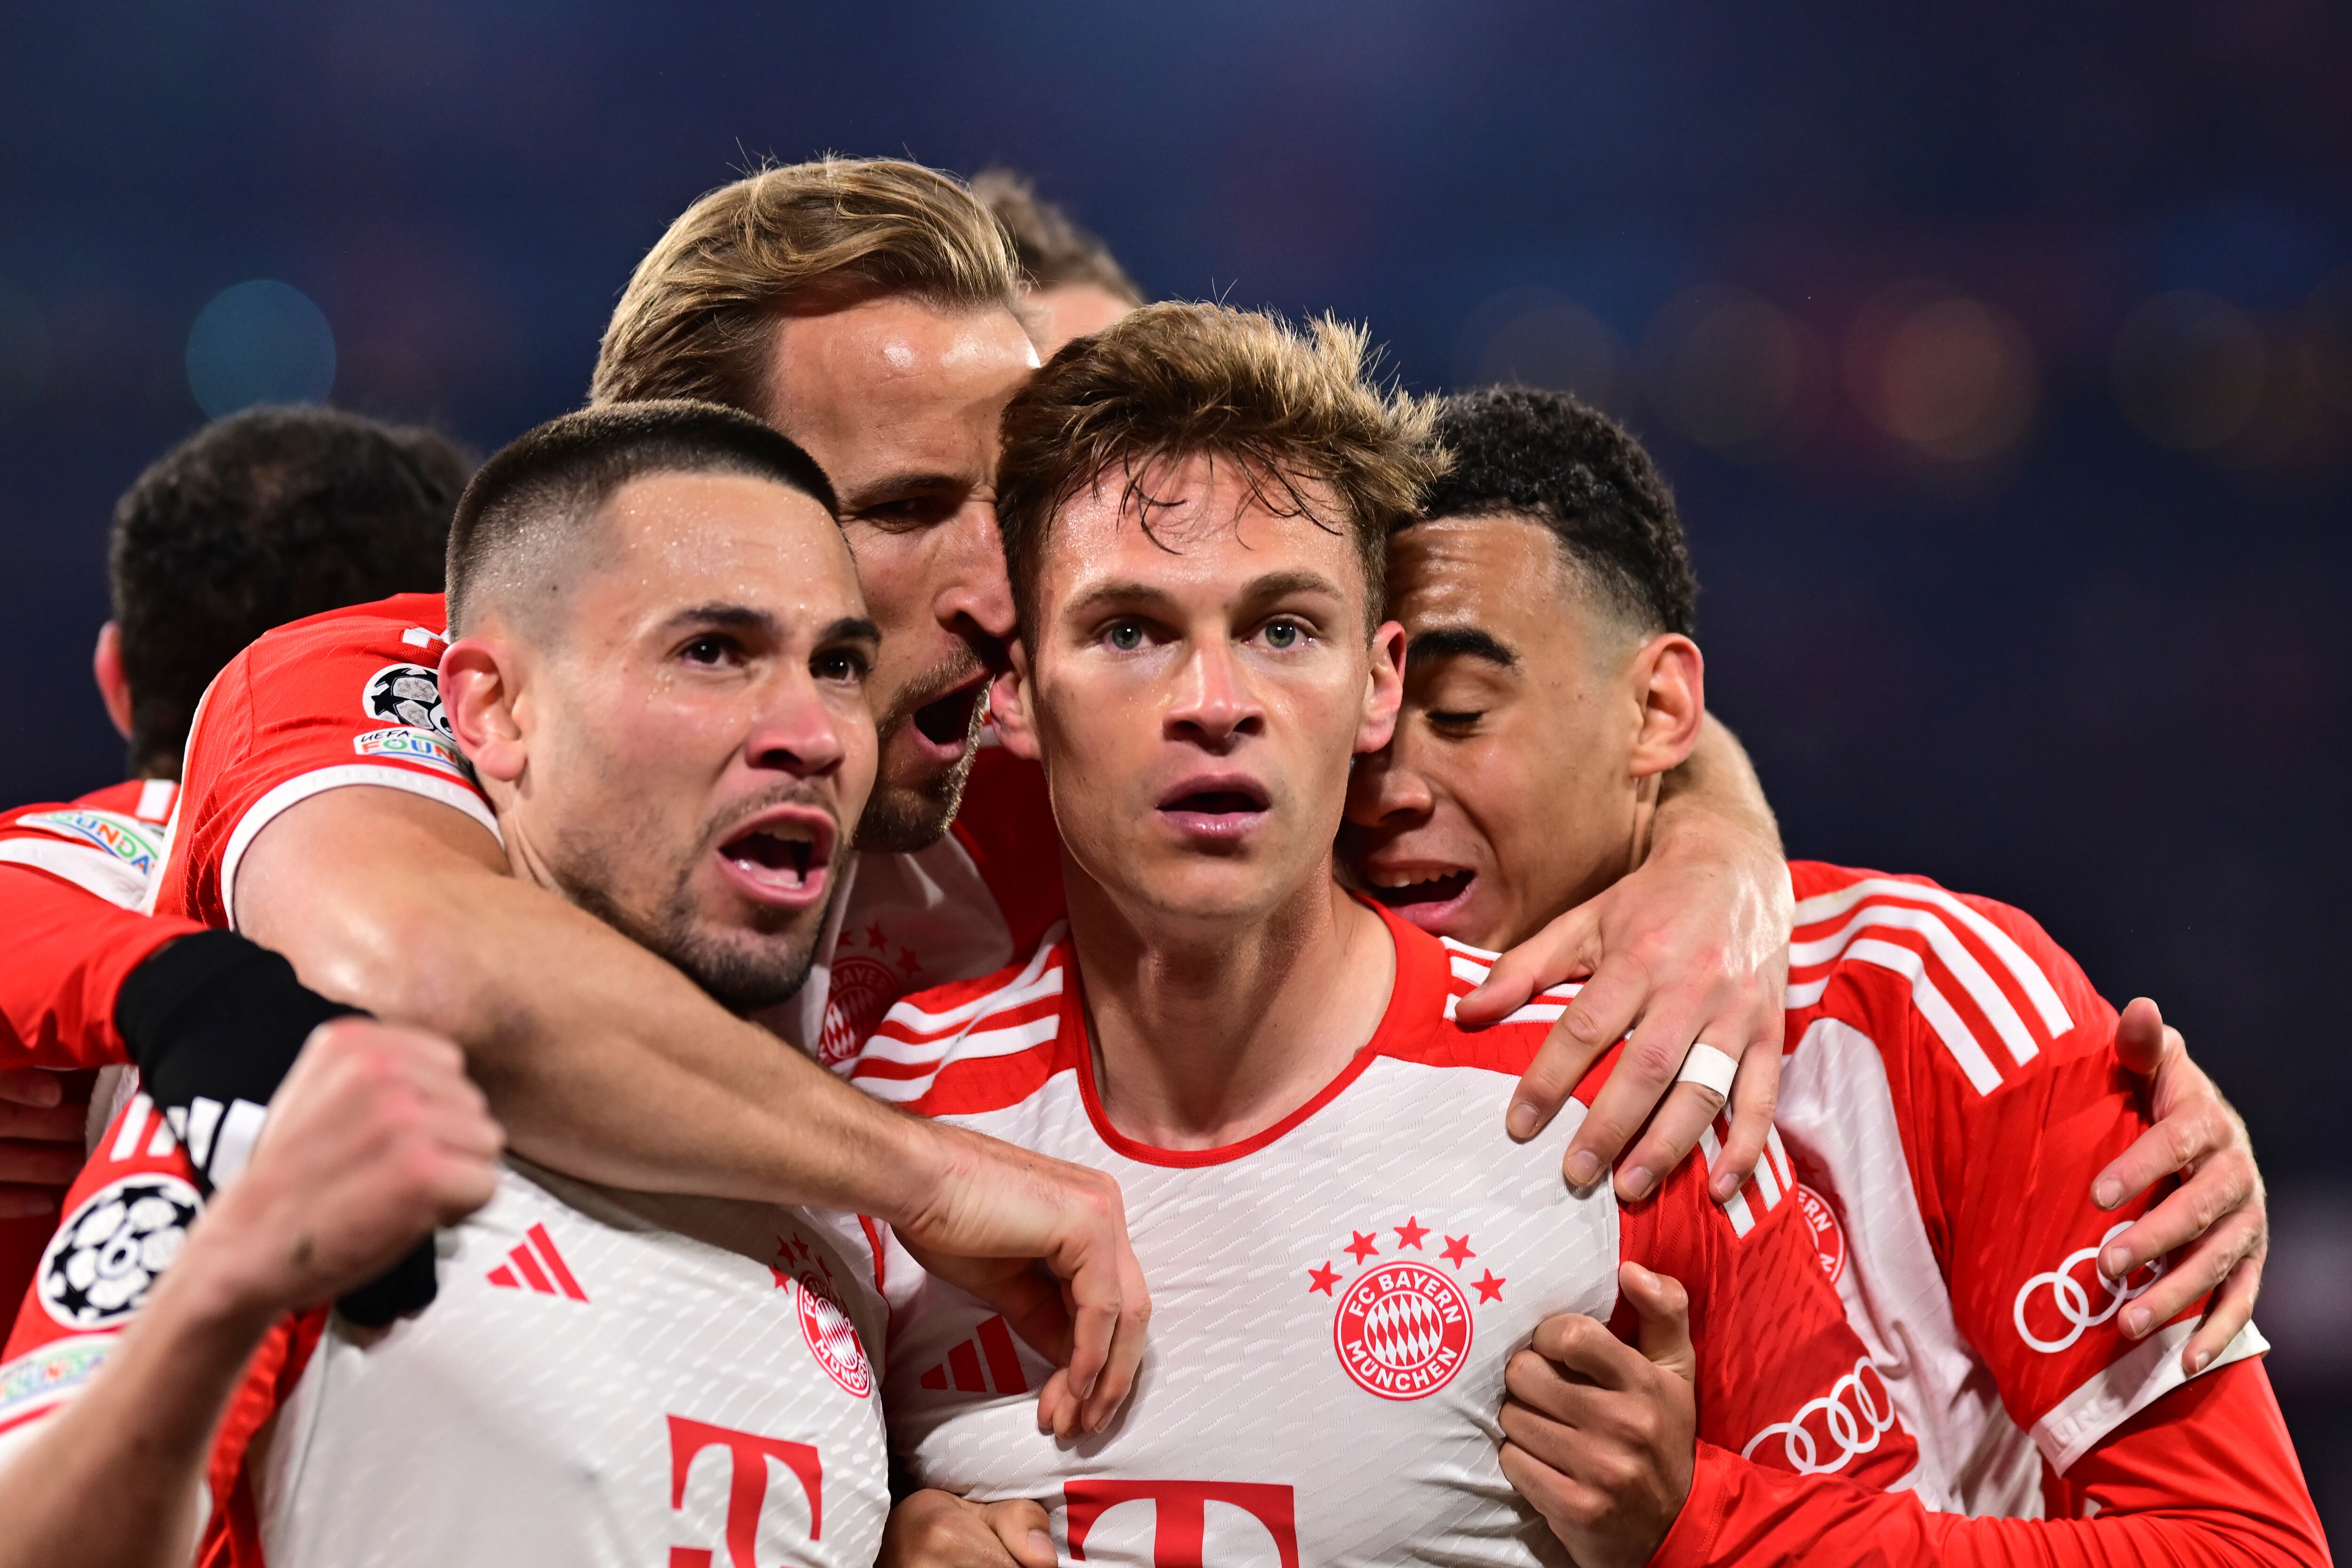 Joshua Kimmich del Bayern Múnich, celebra con sus compañeros de equipo después de anotar el único gol del partido de vuelta en los cuartos de final de la Champions League entre Bayern Múnich y Arsenal (AP Foto/Christian Bruna)